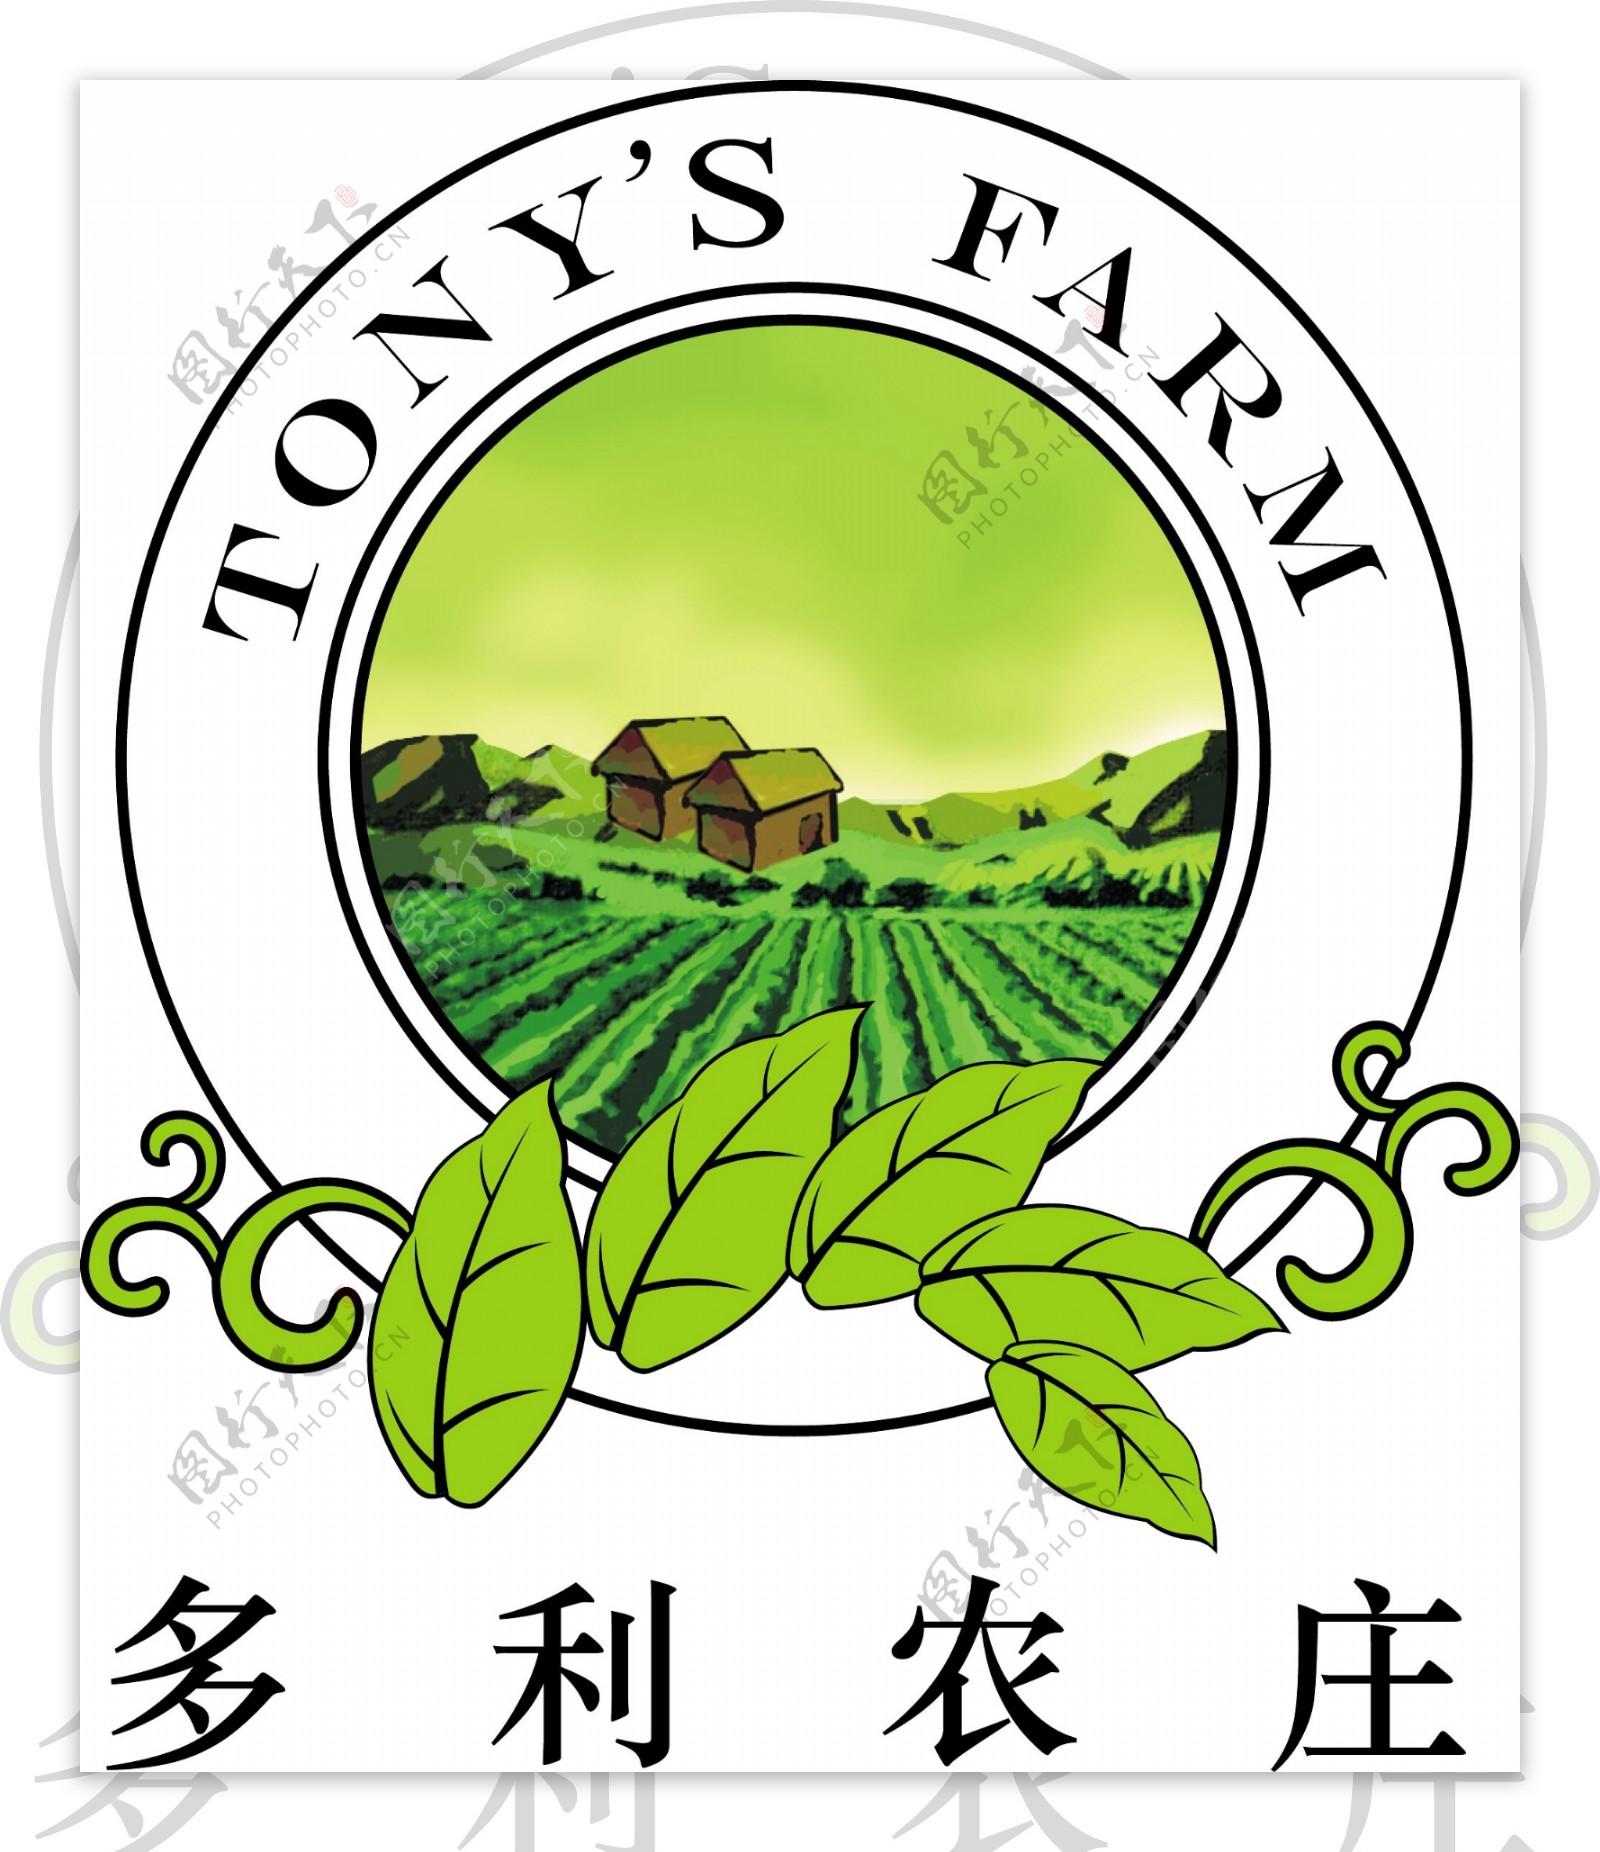 多利农庄公司logo图片